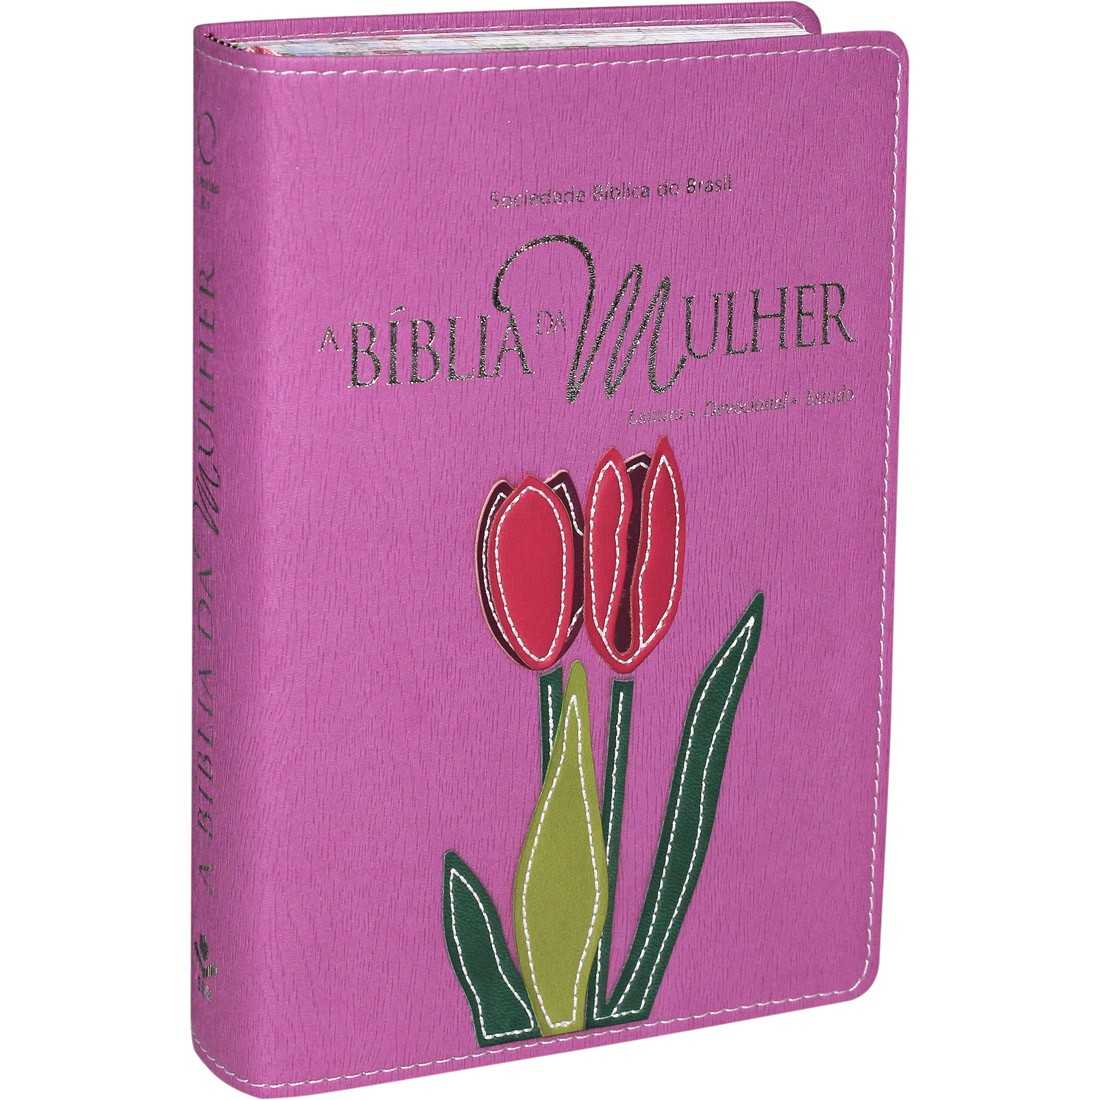 A Bíblia Da Mulher – Orquídea/Roxa/Borda Florida – Média Ra